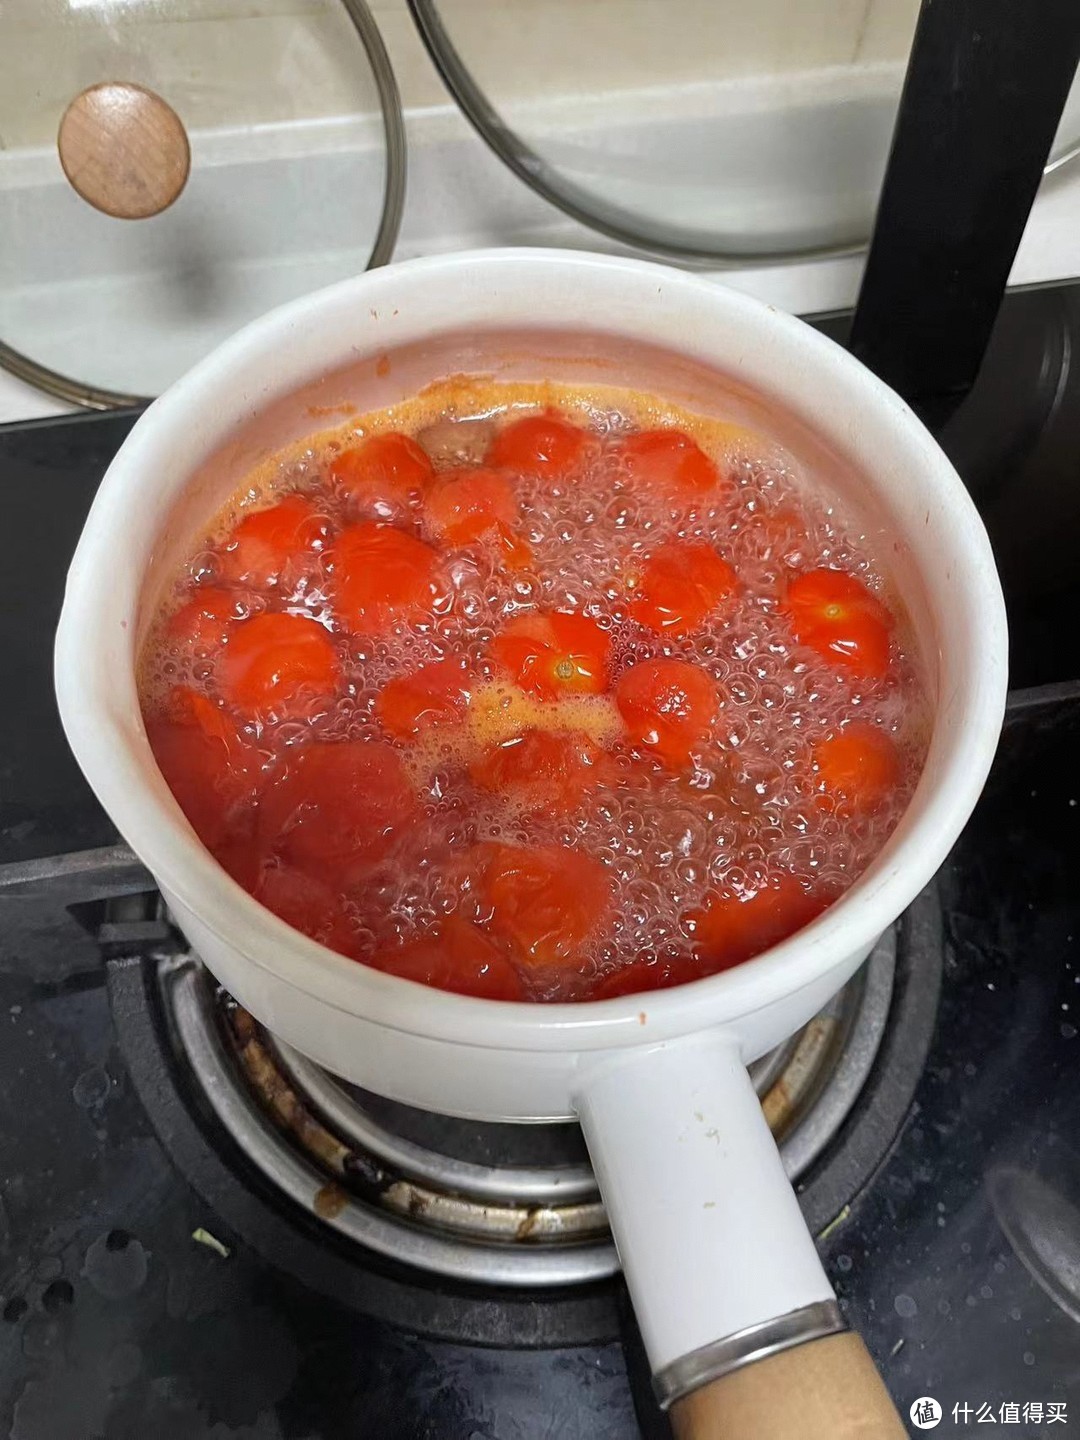 小朋友也能独立制作的美味健康番茄酱做法分享